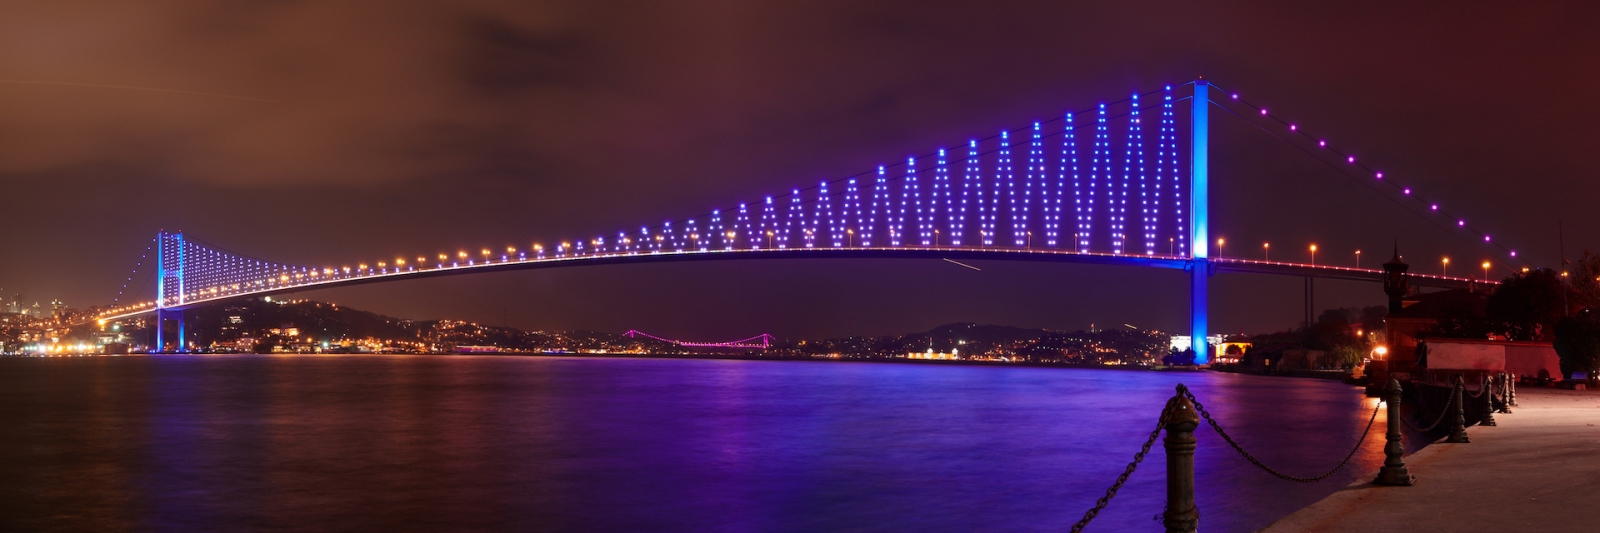 Iluminación del Puente del Bósforo por la noche en Estambul